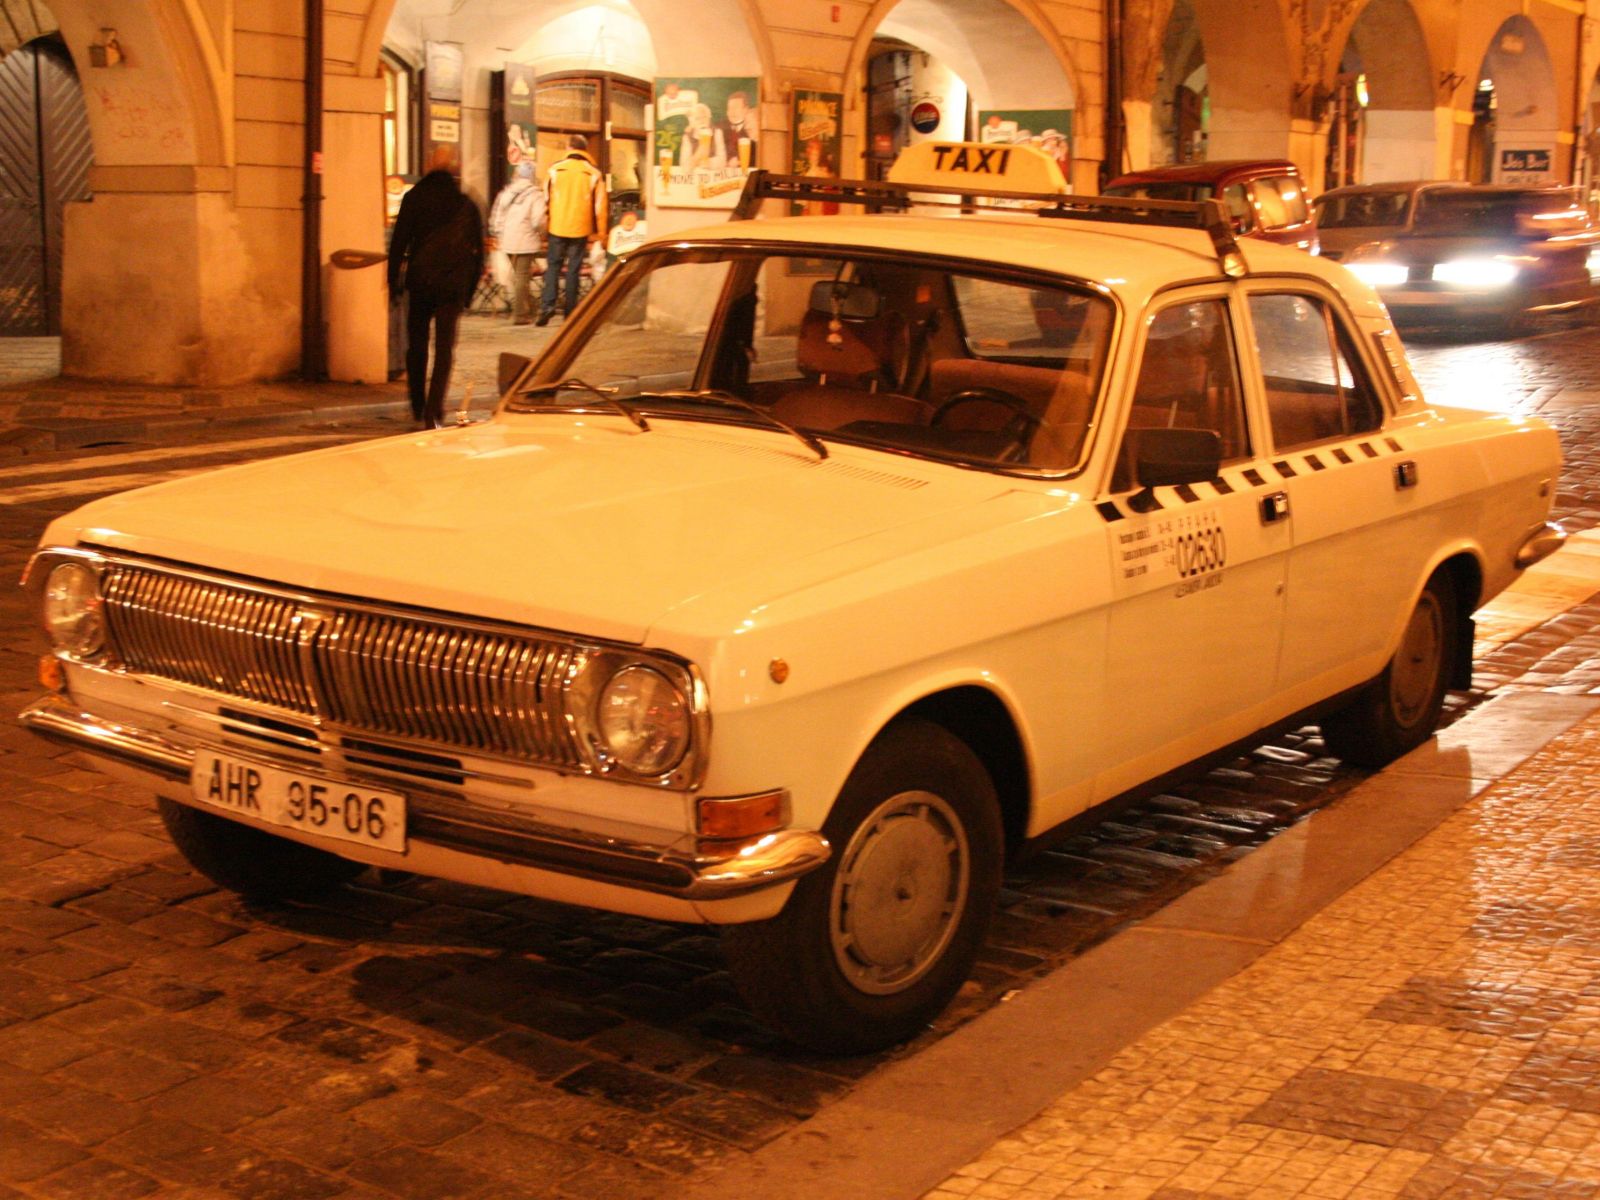 Vražda pražského taxi-bosse je dodnes nevyjasněná. V 90. letech bral výpalné a shromažďoval informace na podsvětí i politiky